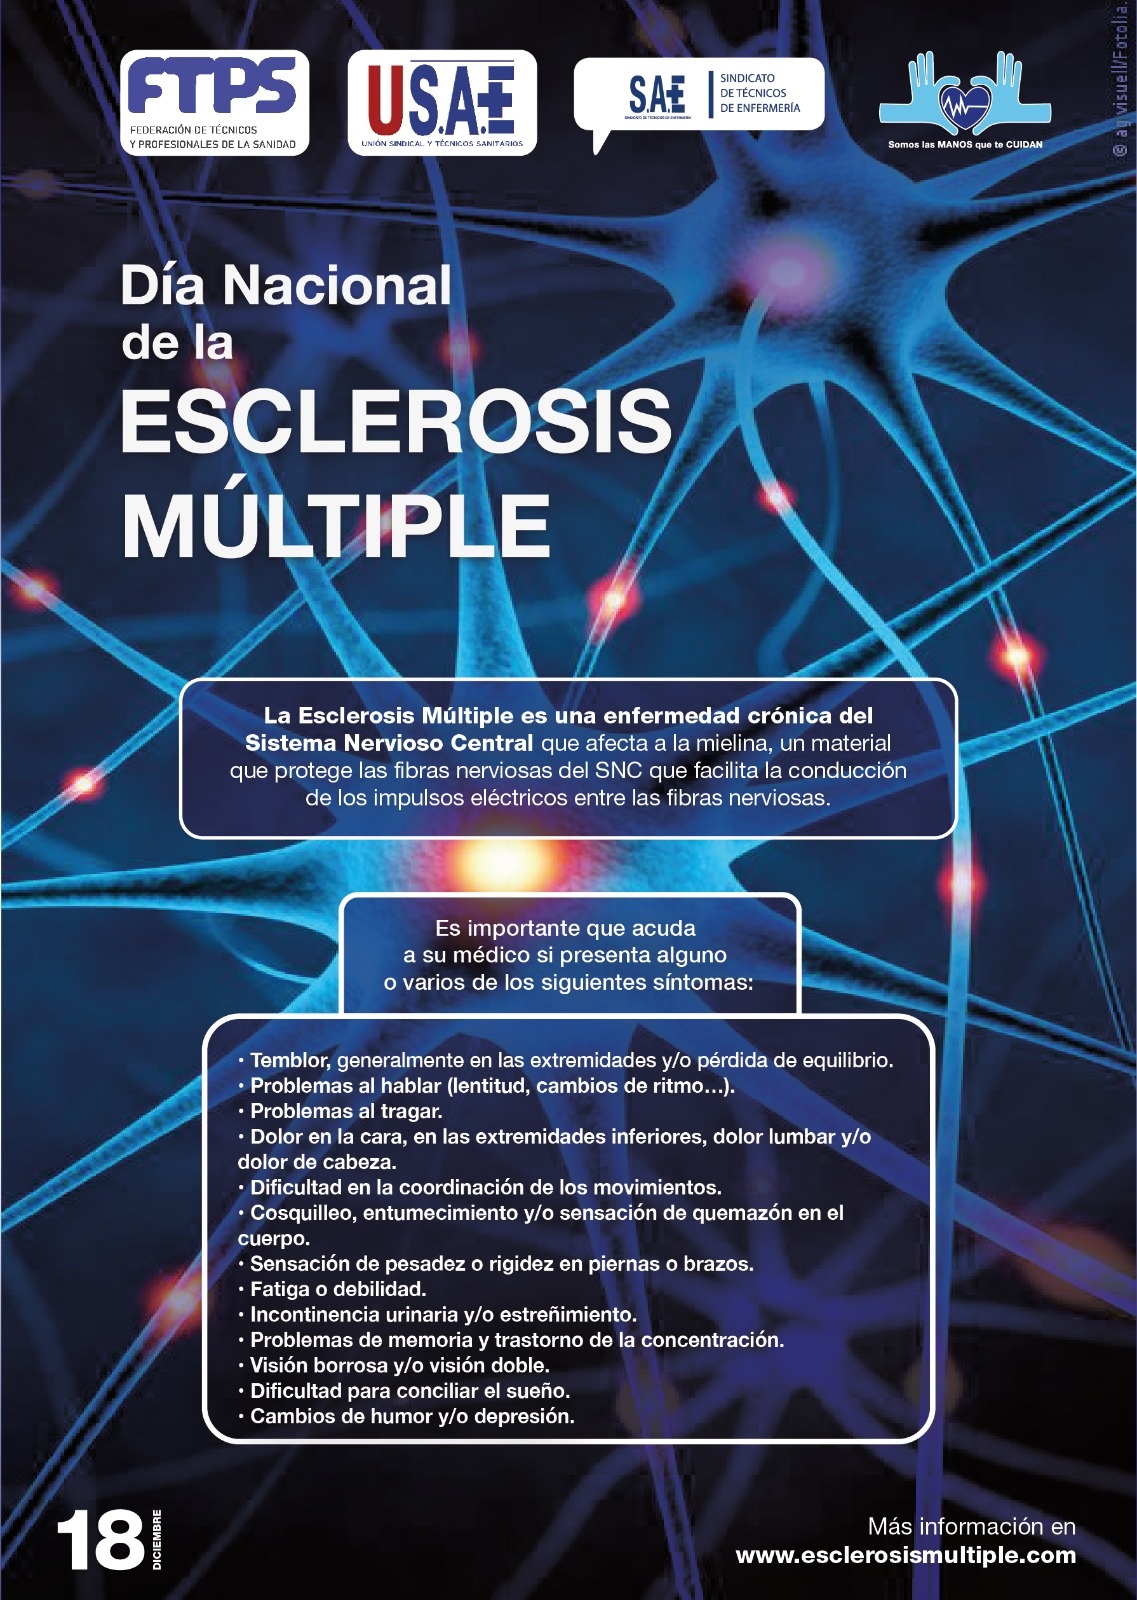 Un diagnóstico temprano es fundamental para mejorar la evolución de la Esclerosis Múltiple